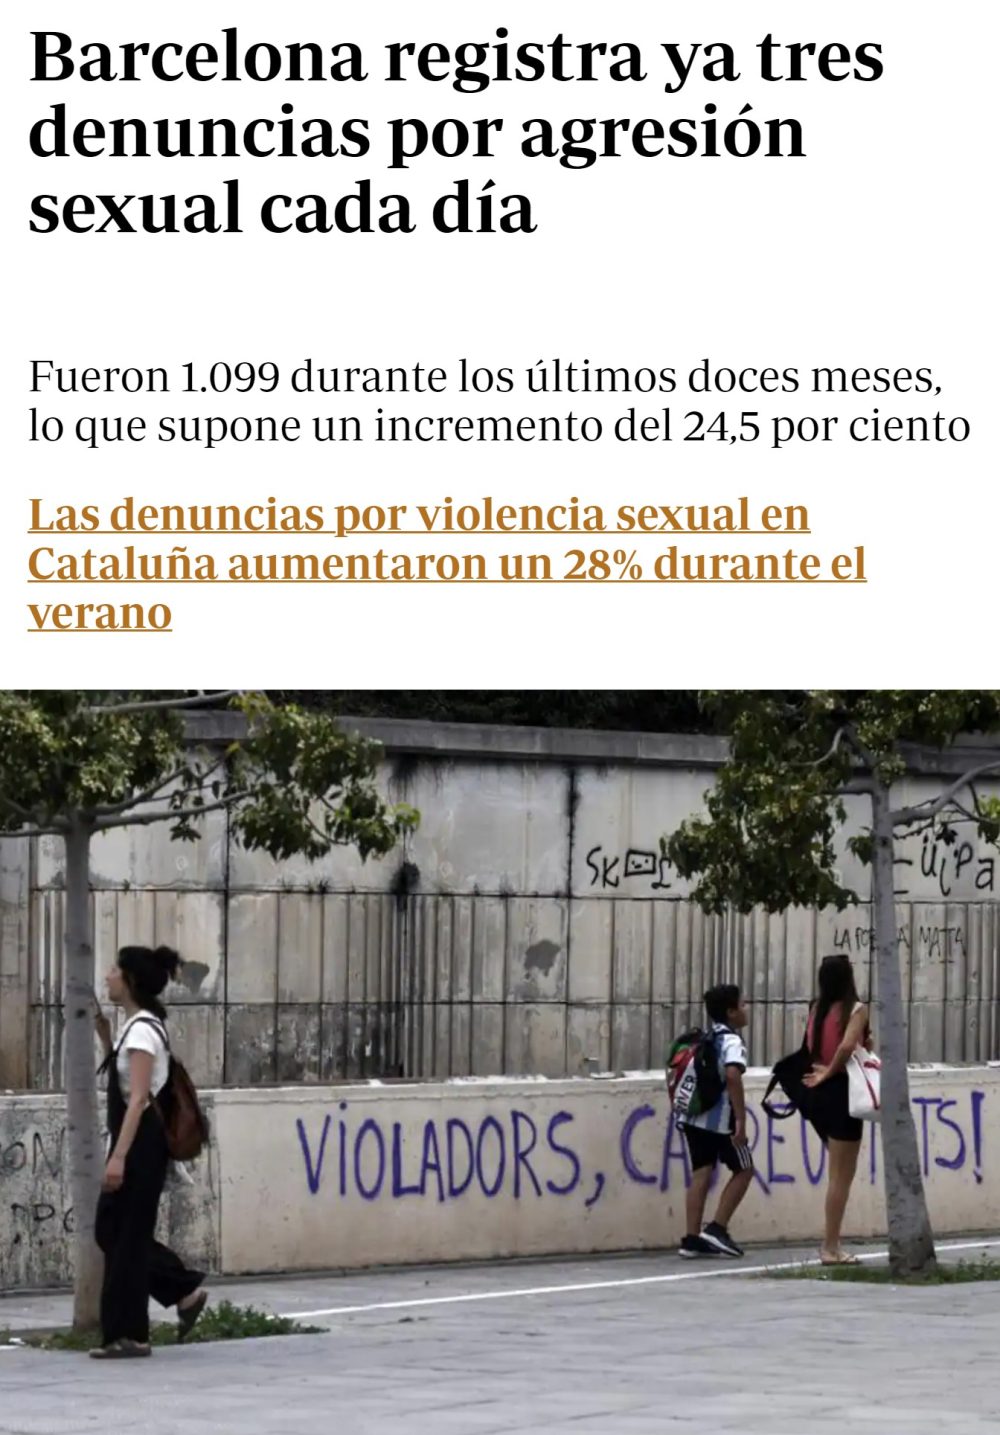 Las denuncias por agrеsión secsual en Warcelona han aumentado un 24,5% en los últimos 12 meses